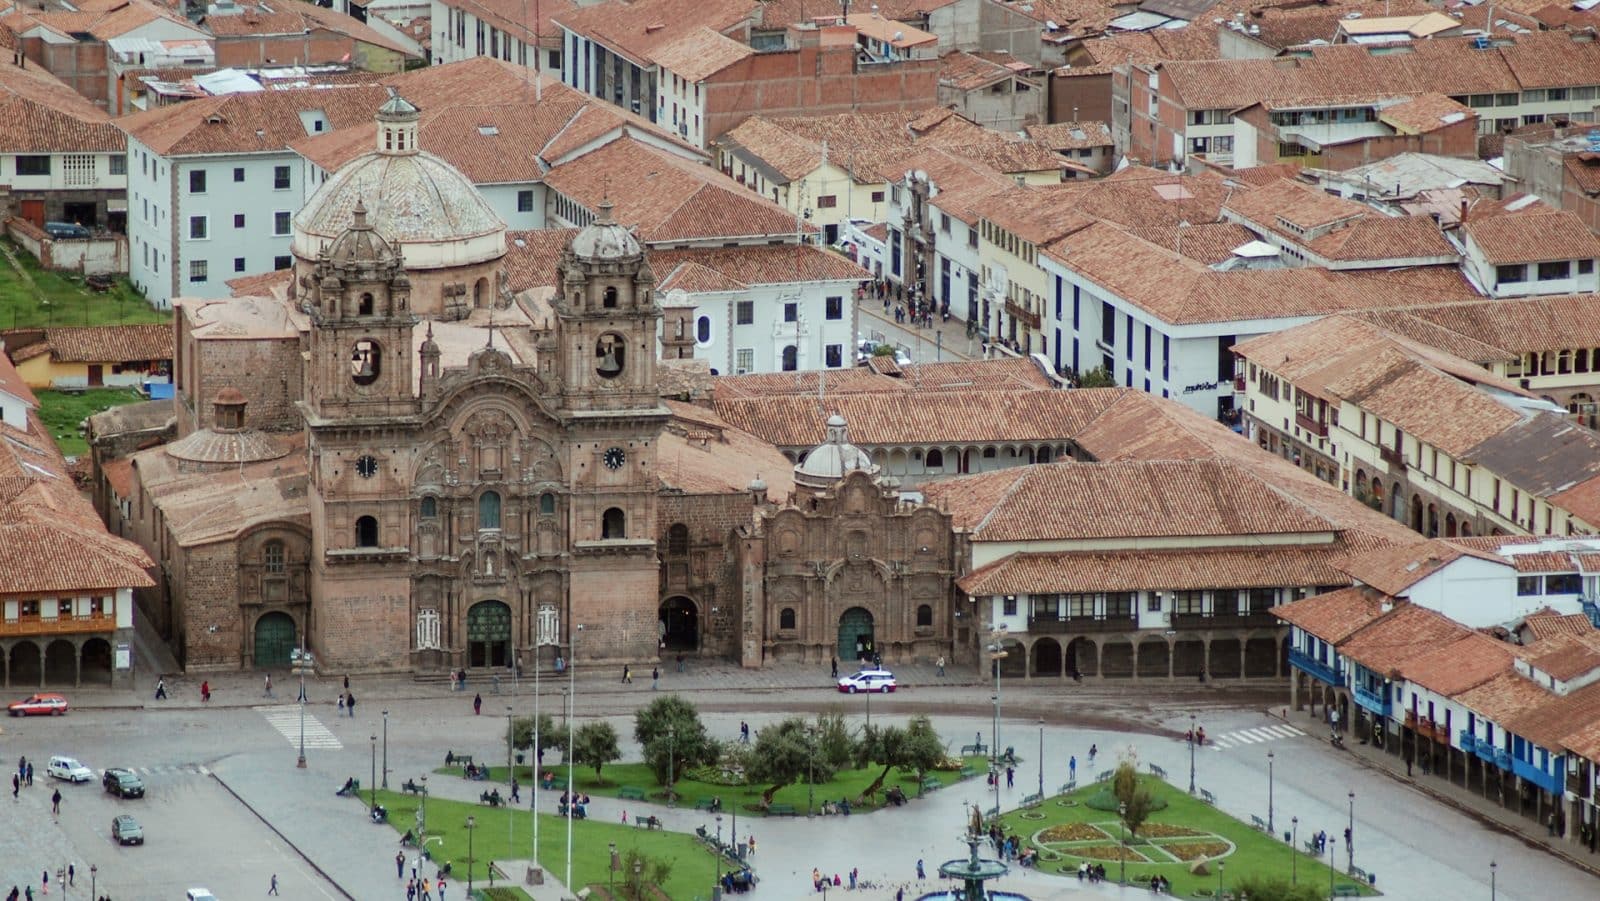 Dónde dormir en Cusco: Mejores zonas y hoteles